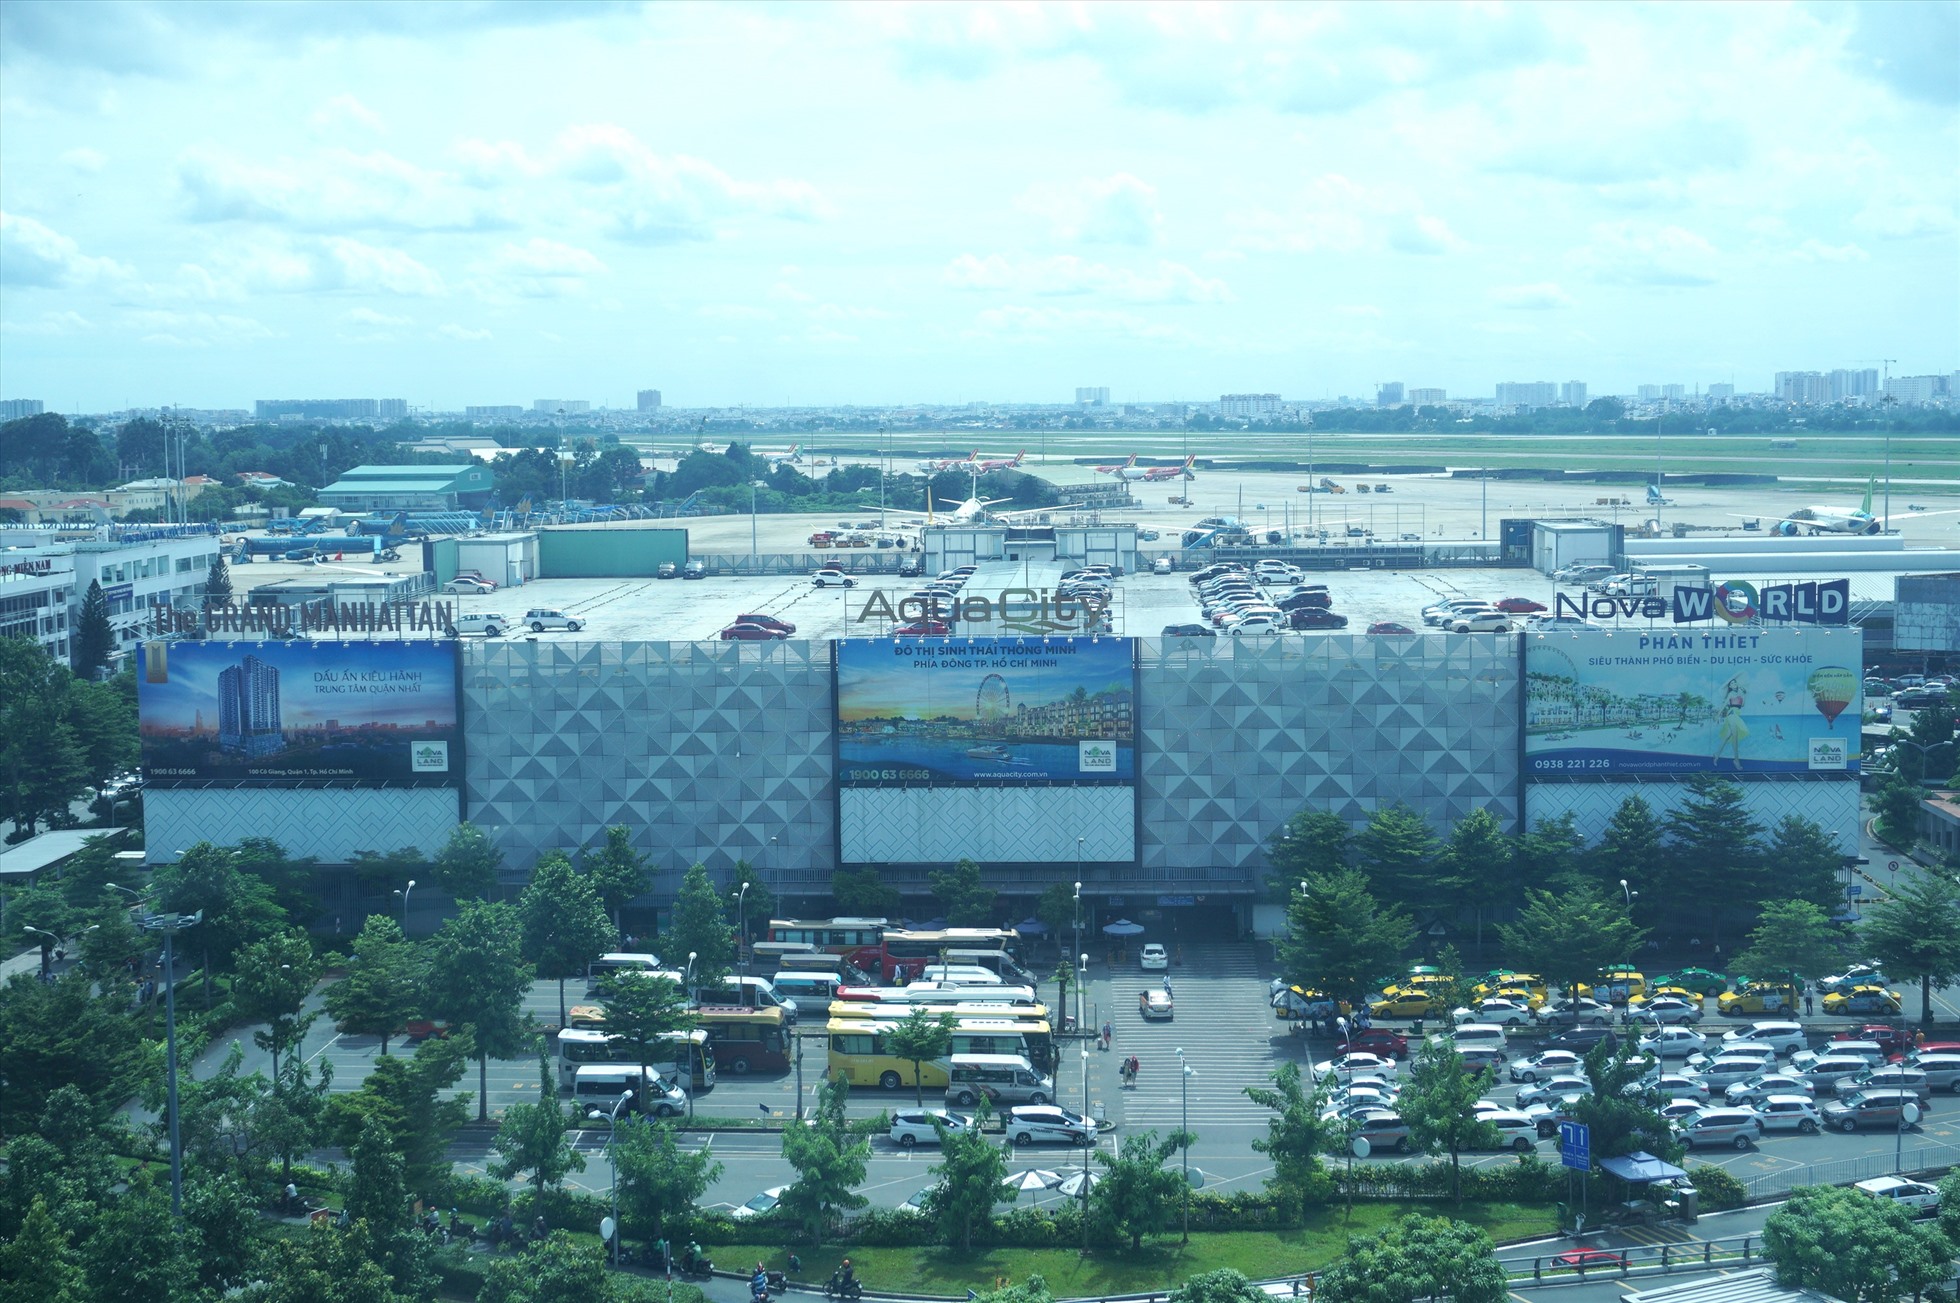 Hiện, tổng diện tích sàn của nhà xe TCP trong Tân Sơn Nhất là 67.000 m2, gồm một tầng hầm, 6 tầng nổi và một tầng mái. Bãi xe chứa được 6.000 xe máy, 1.500 ôtô và 700 taxi. Trung bình mỗi ngày có 6.600 lượt xe máy và 4.500 lượt ôtô vào sân bay. Cao điểm Tết Nguyên đán năm nay dự báo có đến 9.500 lượt xe máy và 6.500 lượt ôtô mỗi ngày nên sẽ dẫn đến quá tải.